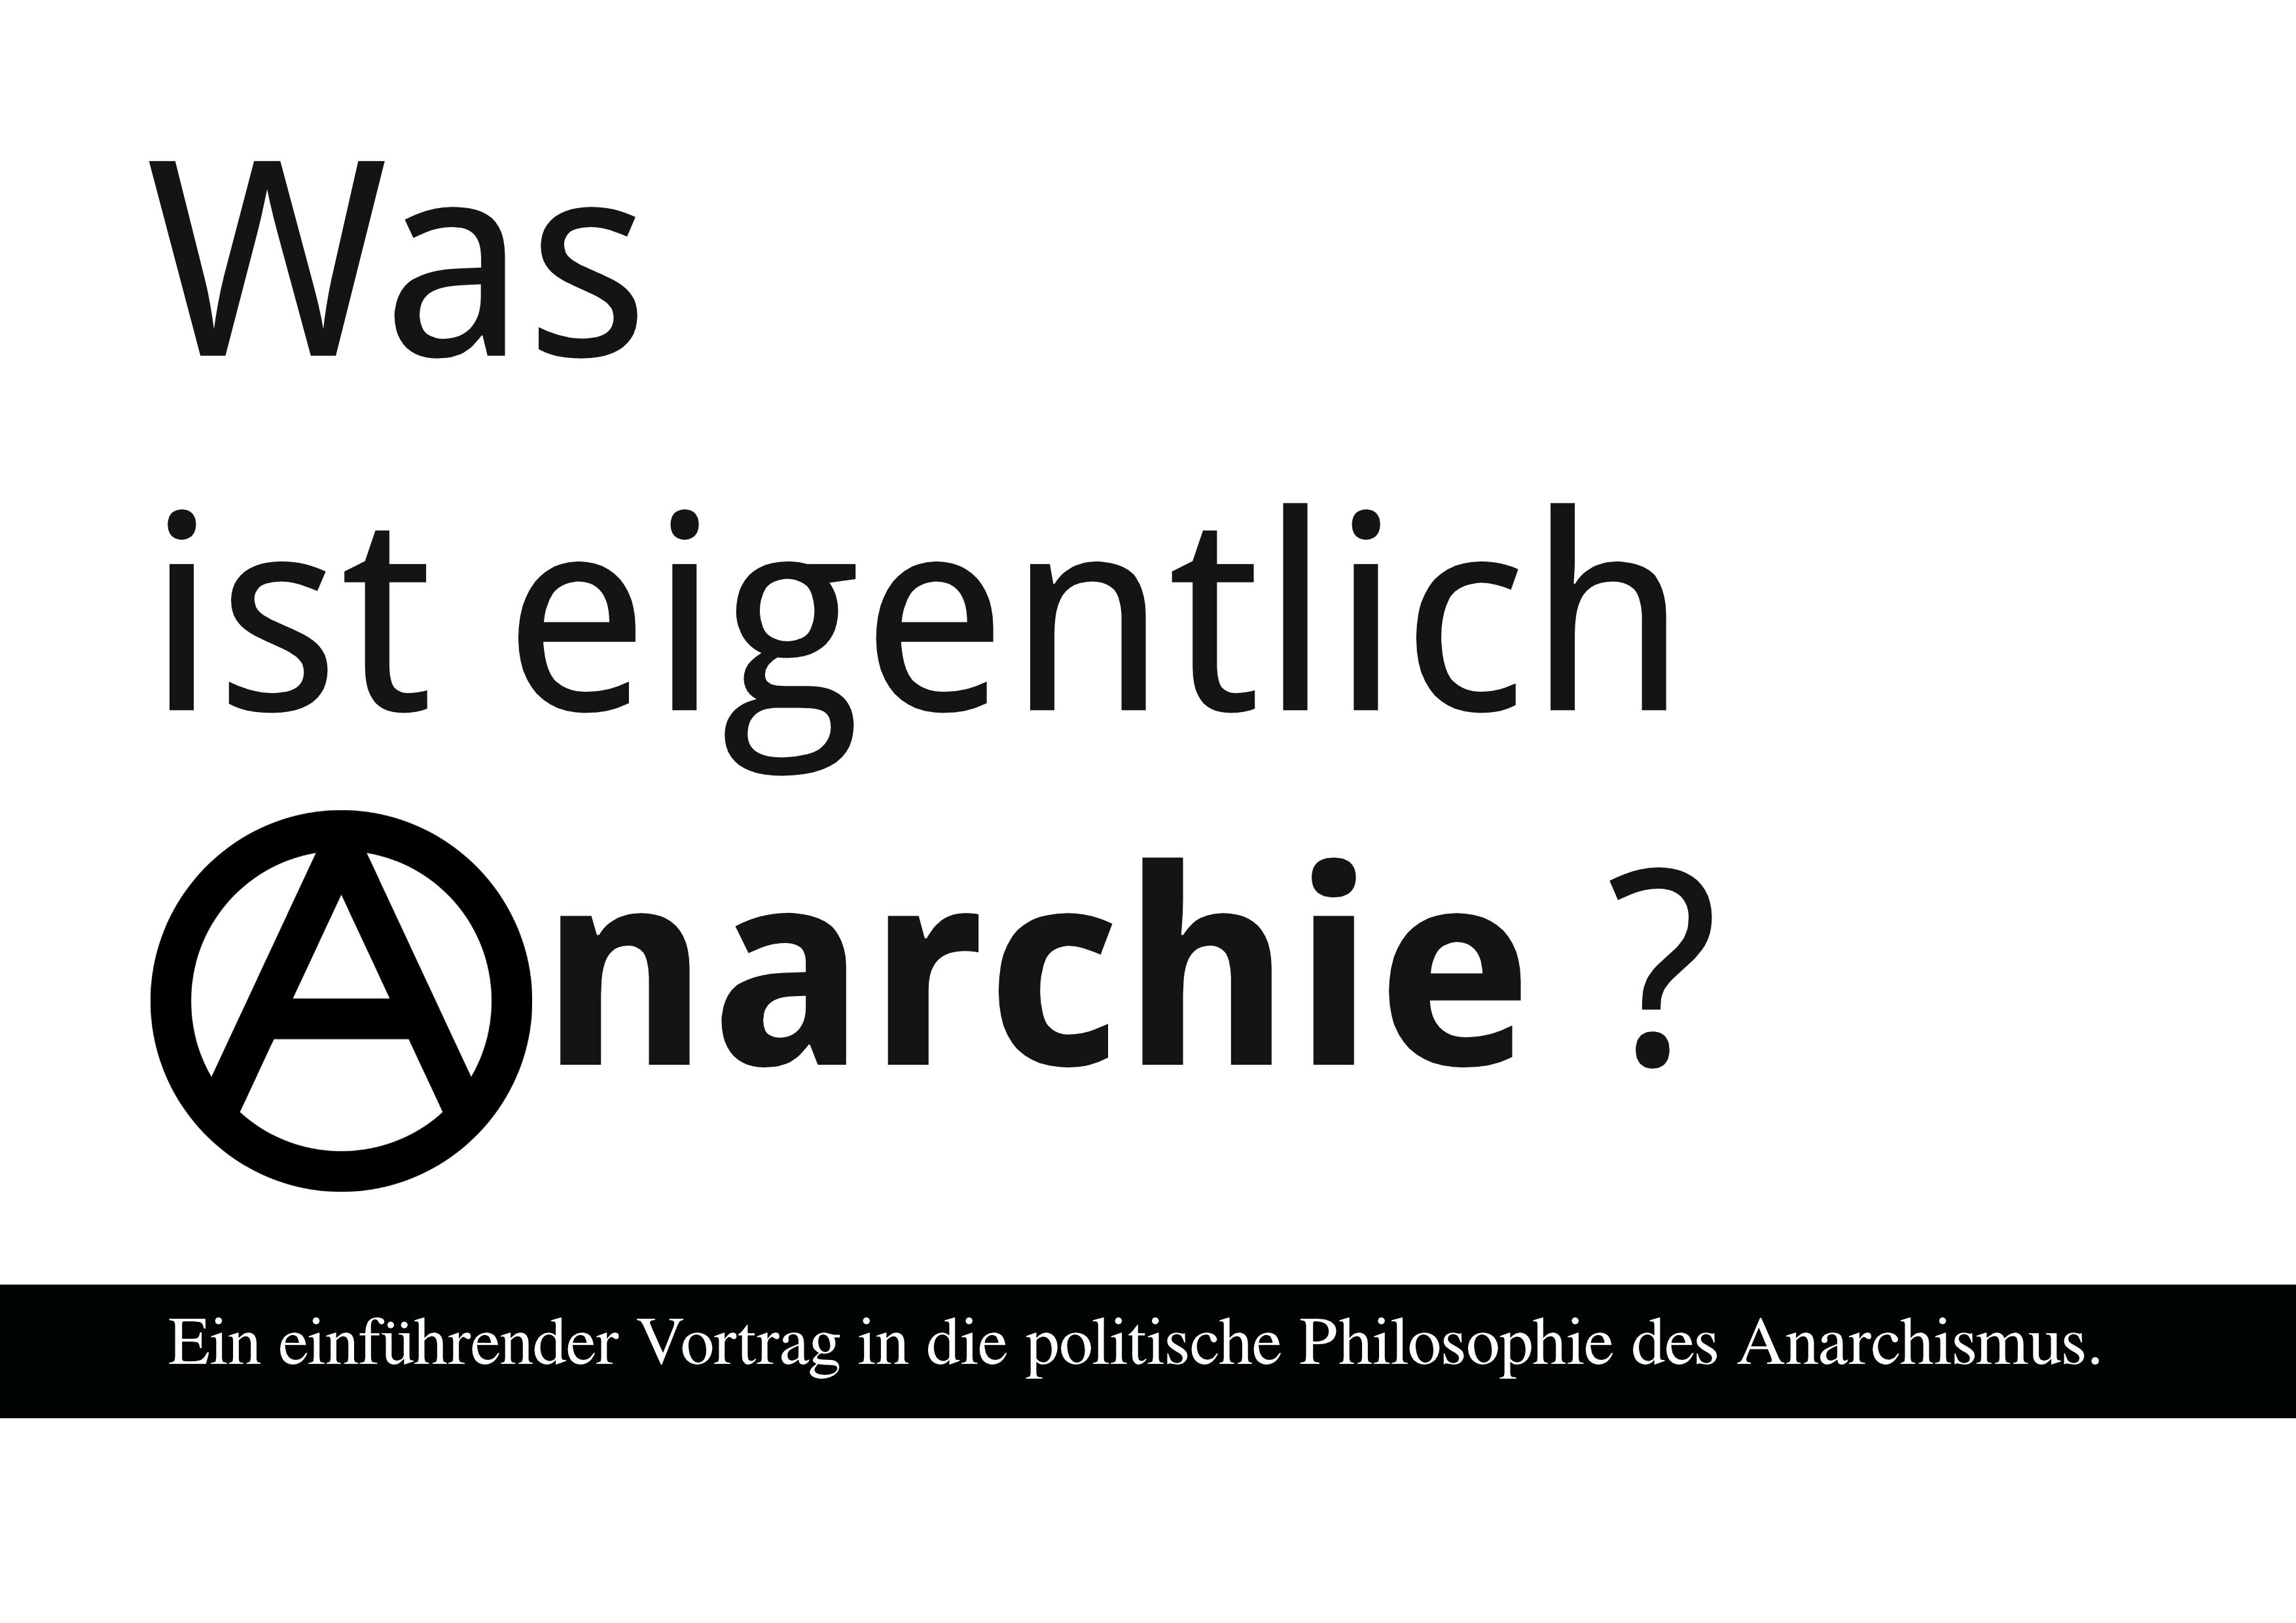 Vortrag: Was ist eigentlich Anarchie und was wollen die Anarchisten?